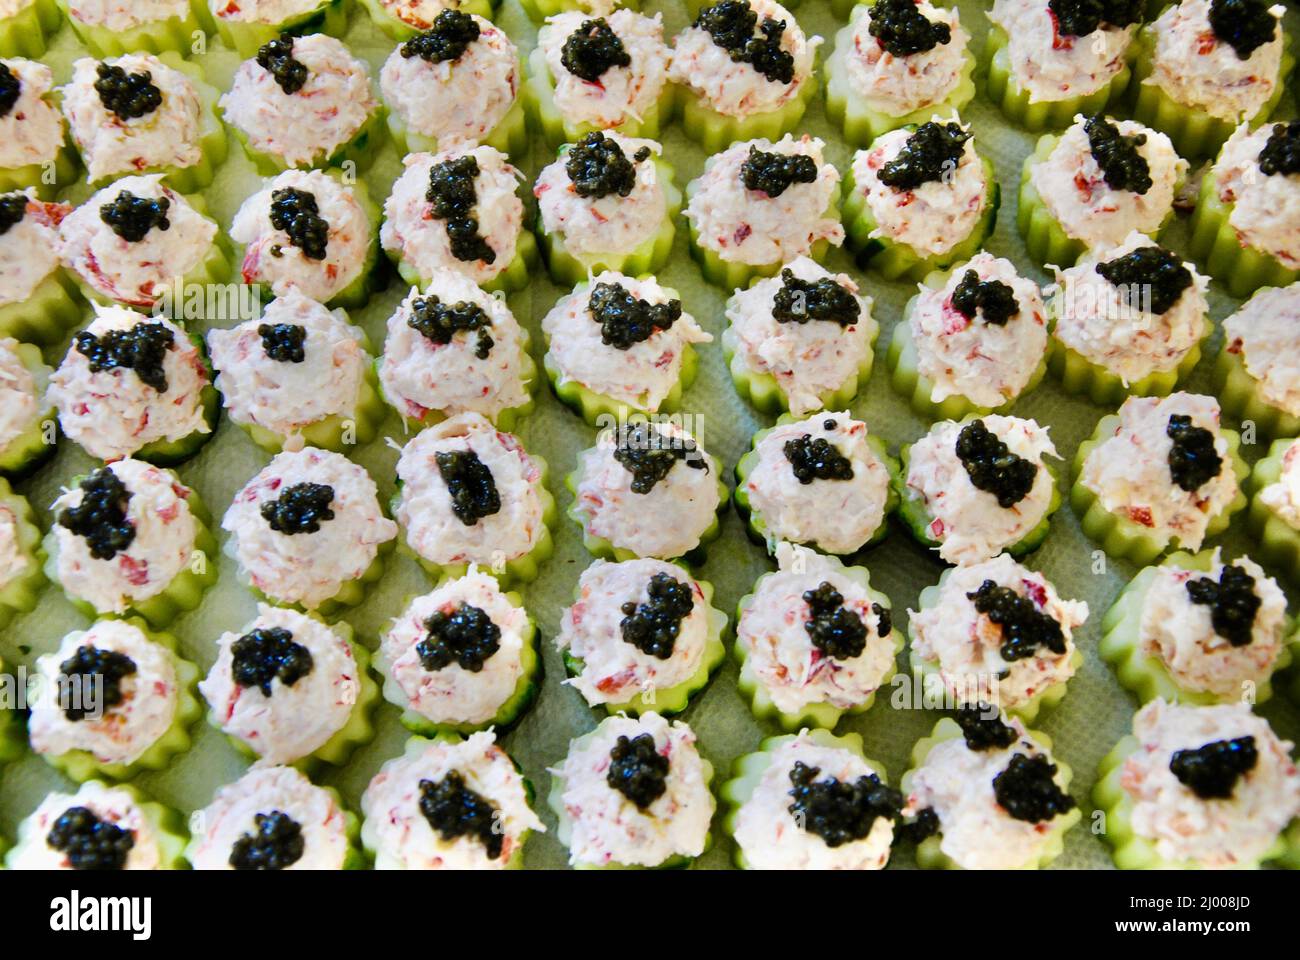 Copas de pepino llenas de ensalada de langosta con caviar negro preparado para un gran evento Foto de stock